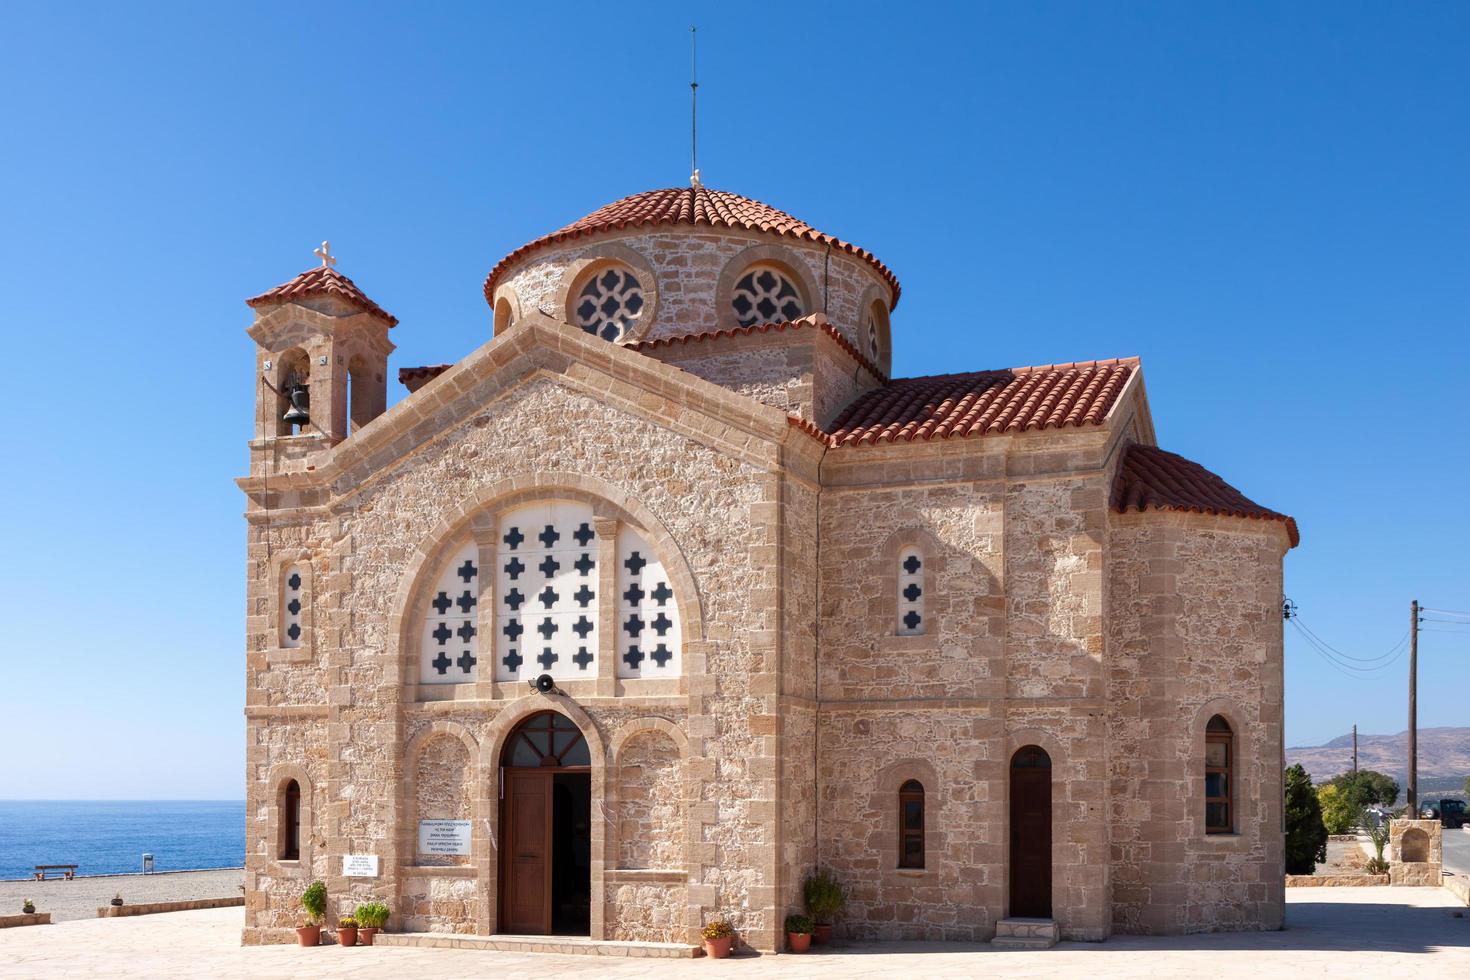 cape deprano, cyprus, griekenland, 2009. kerk van agios georgios foto